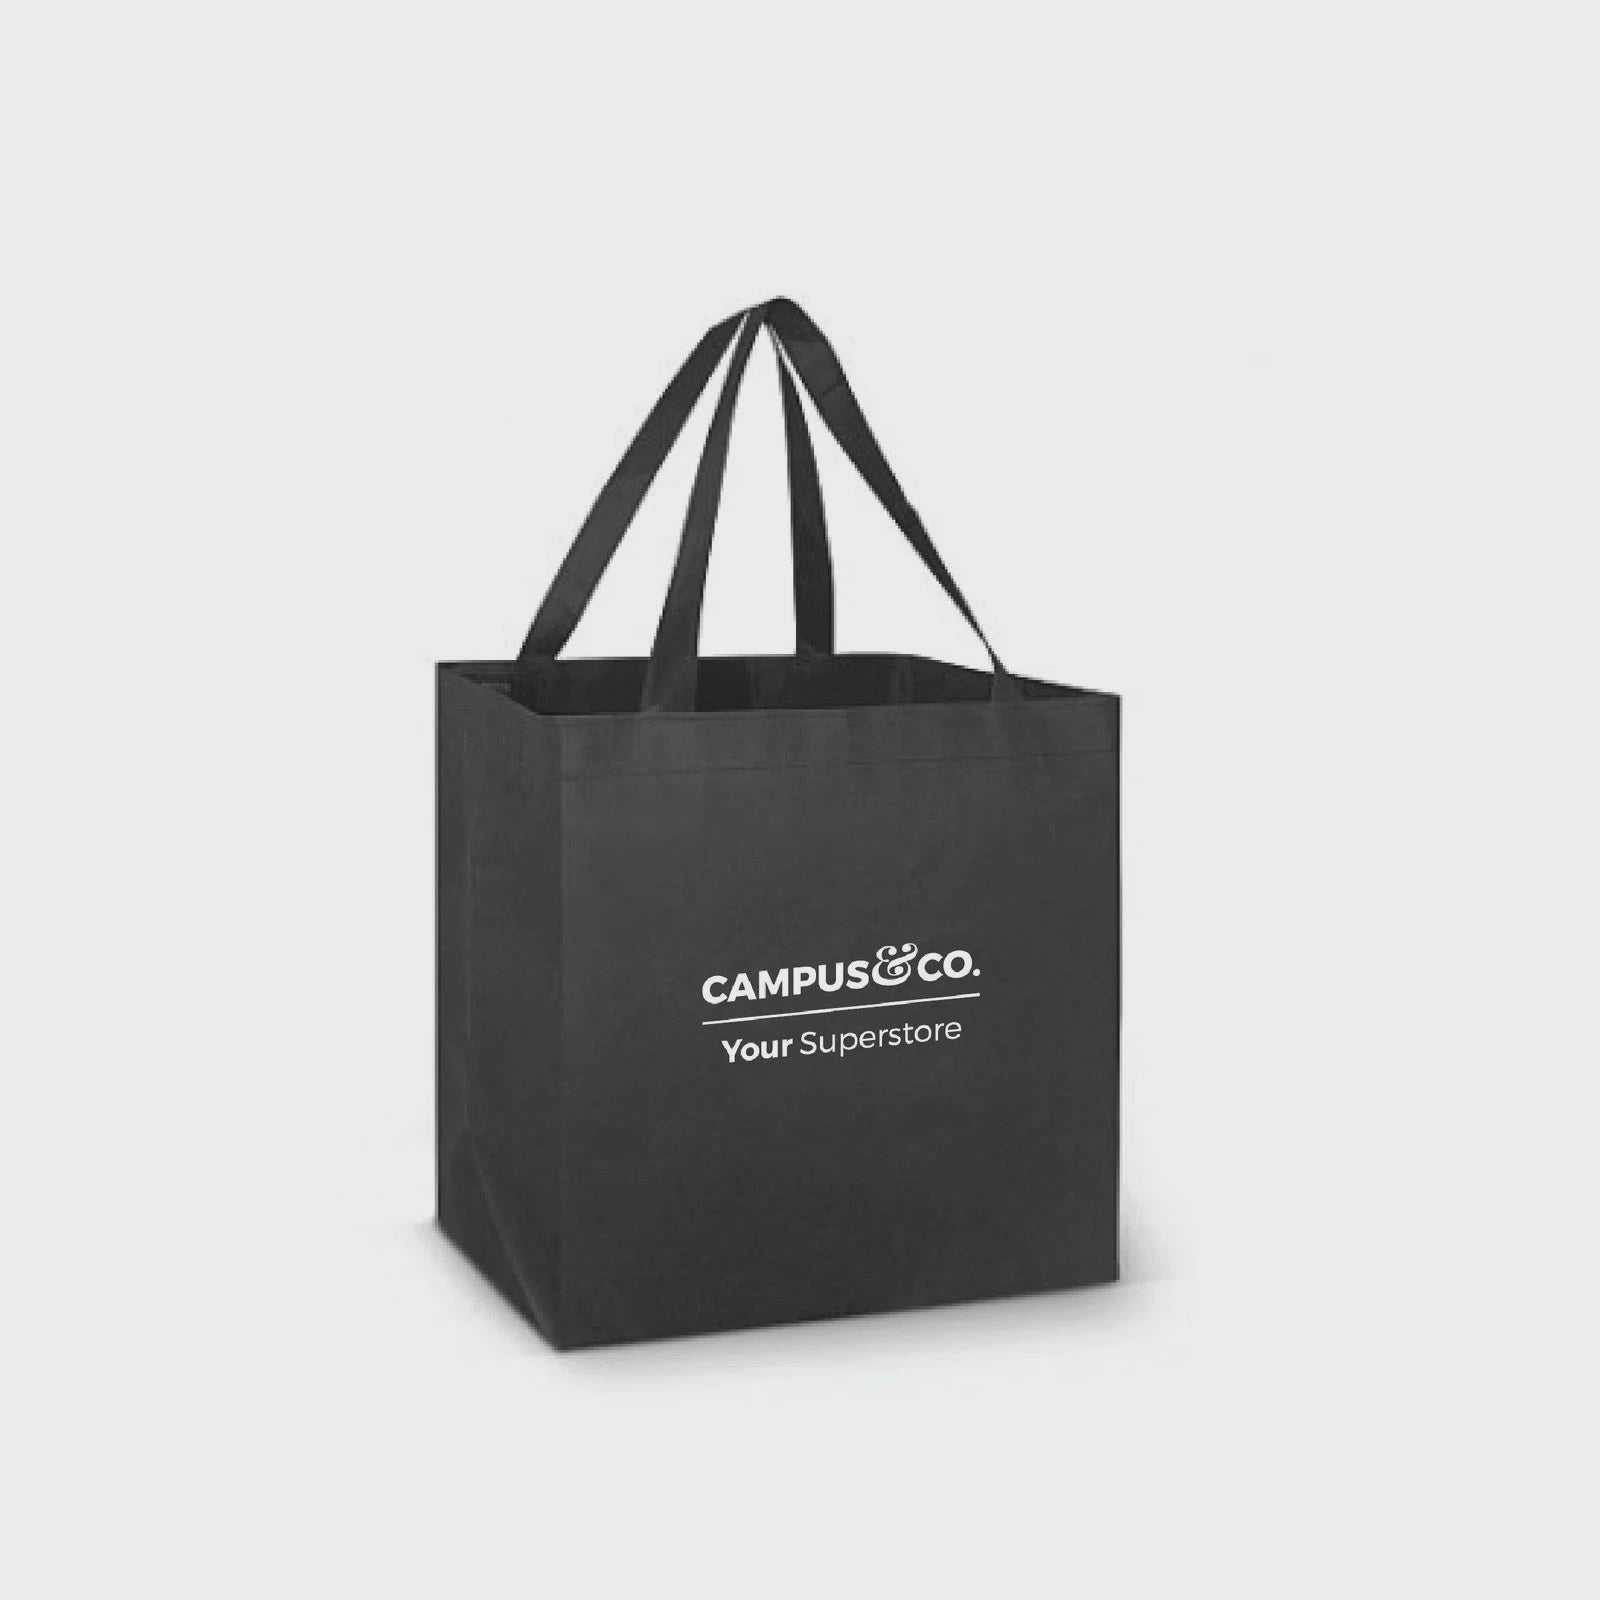 Campus&Co. Reusable Bag